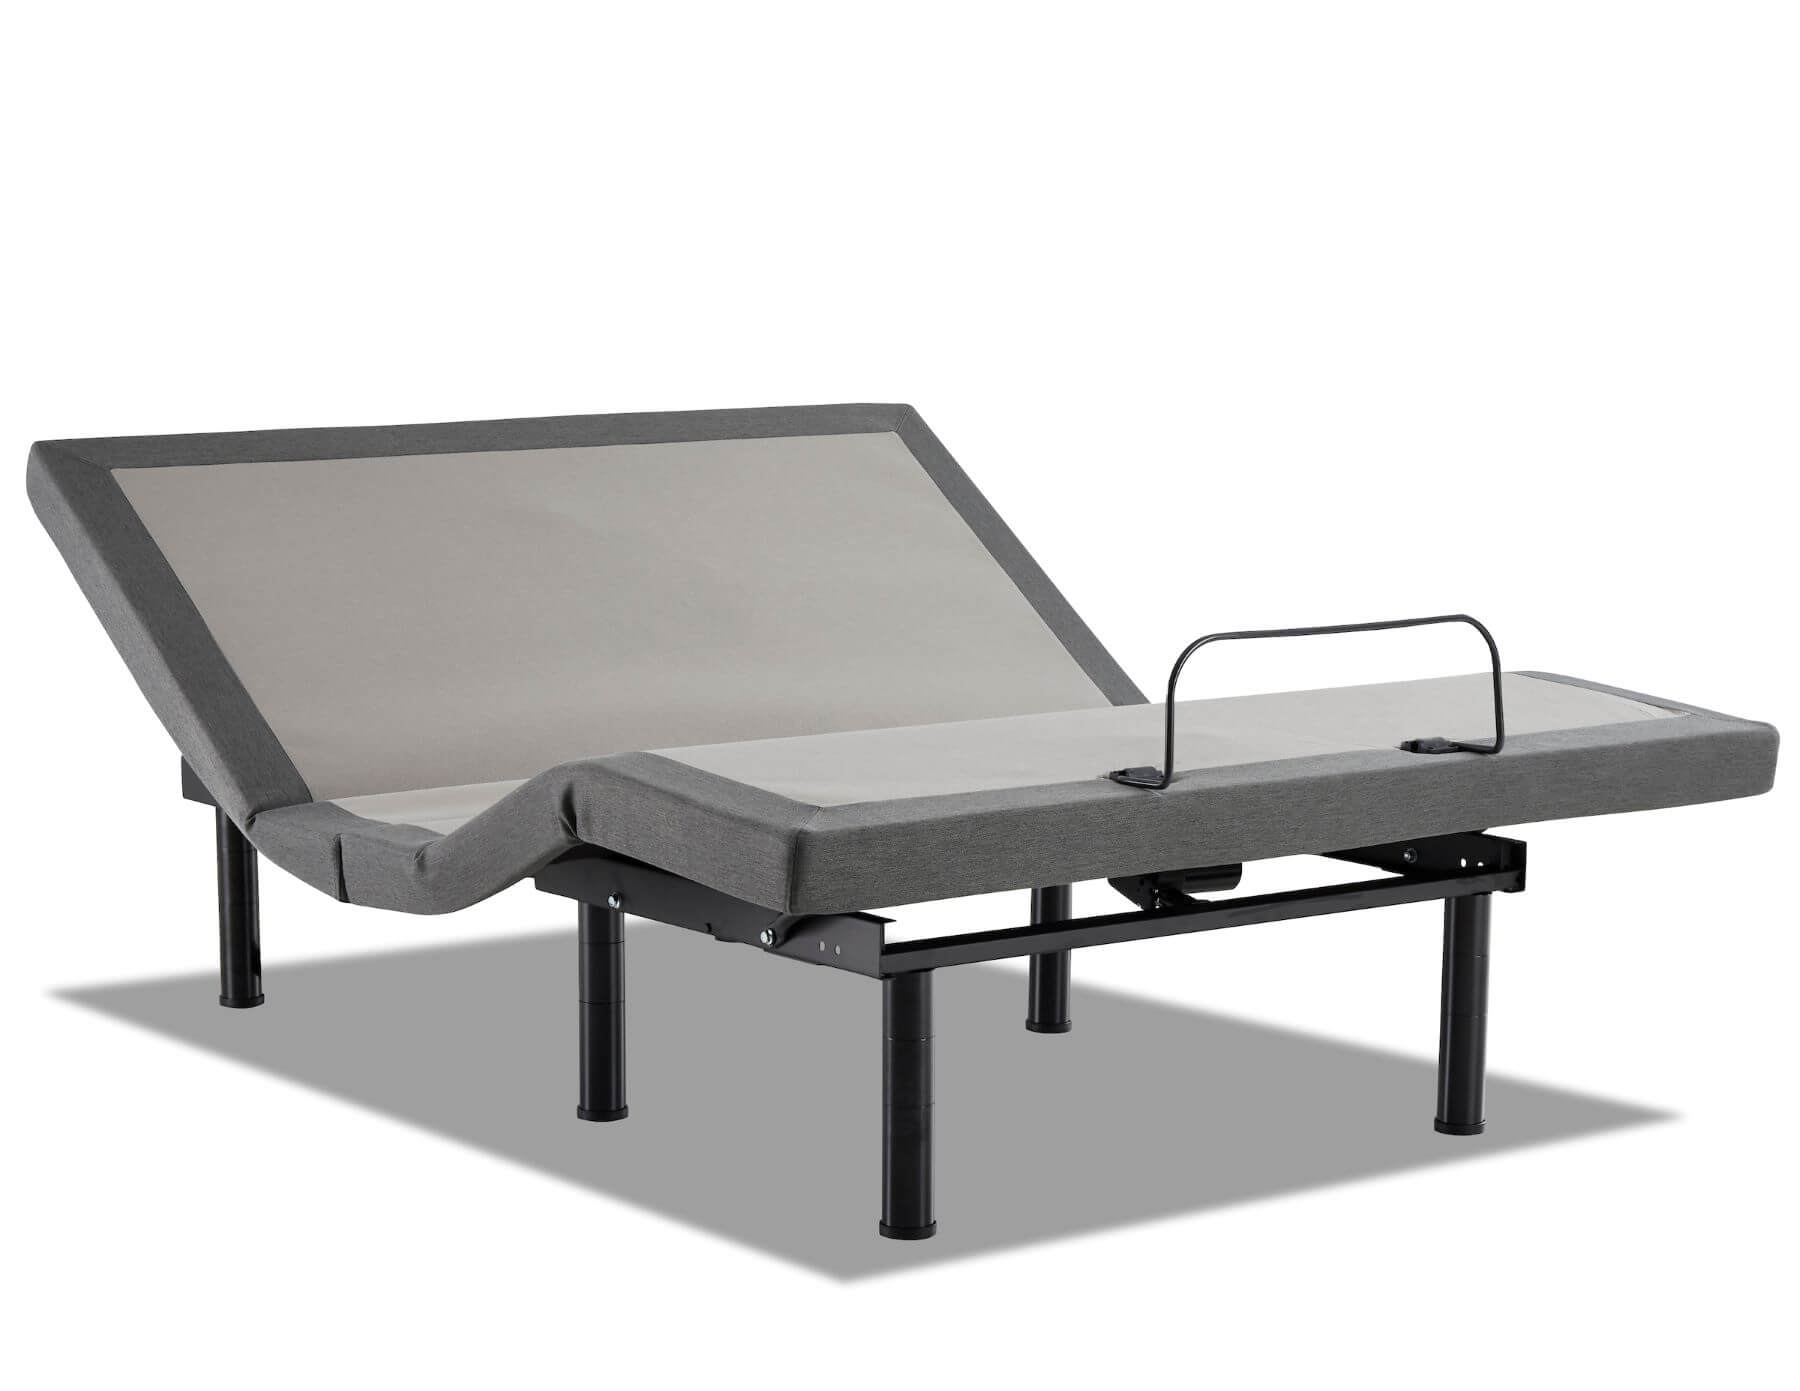 Lifestyle 3500 Adjustable Bed Base, Adjustable Bed Frame Weight Limit